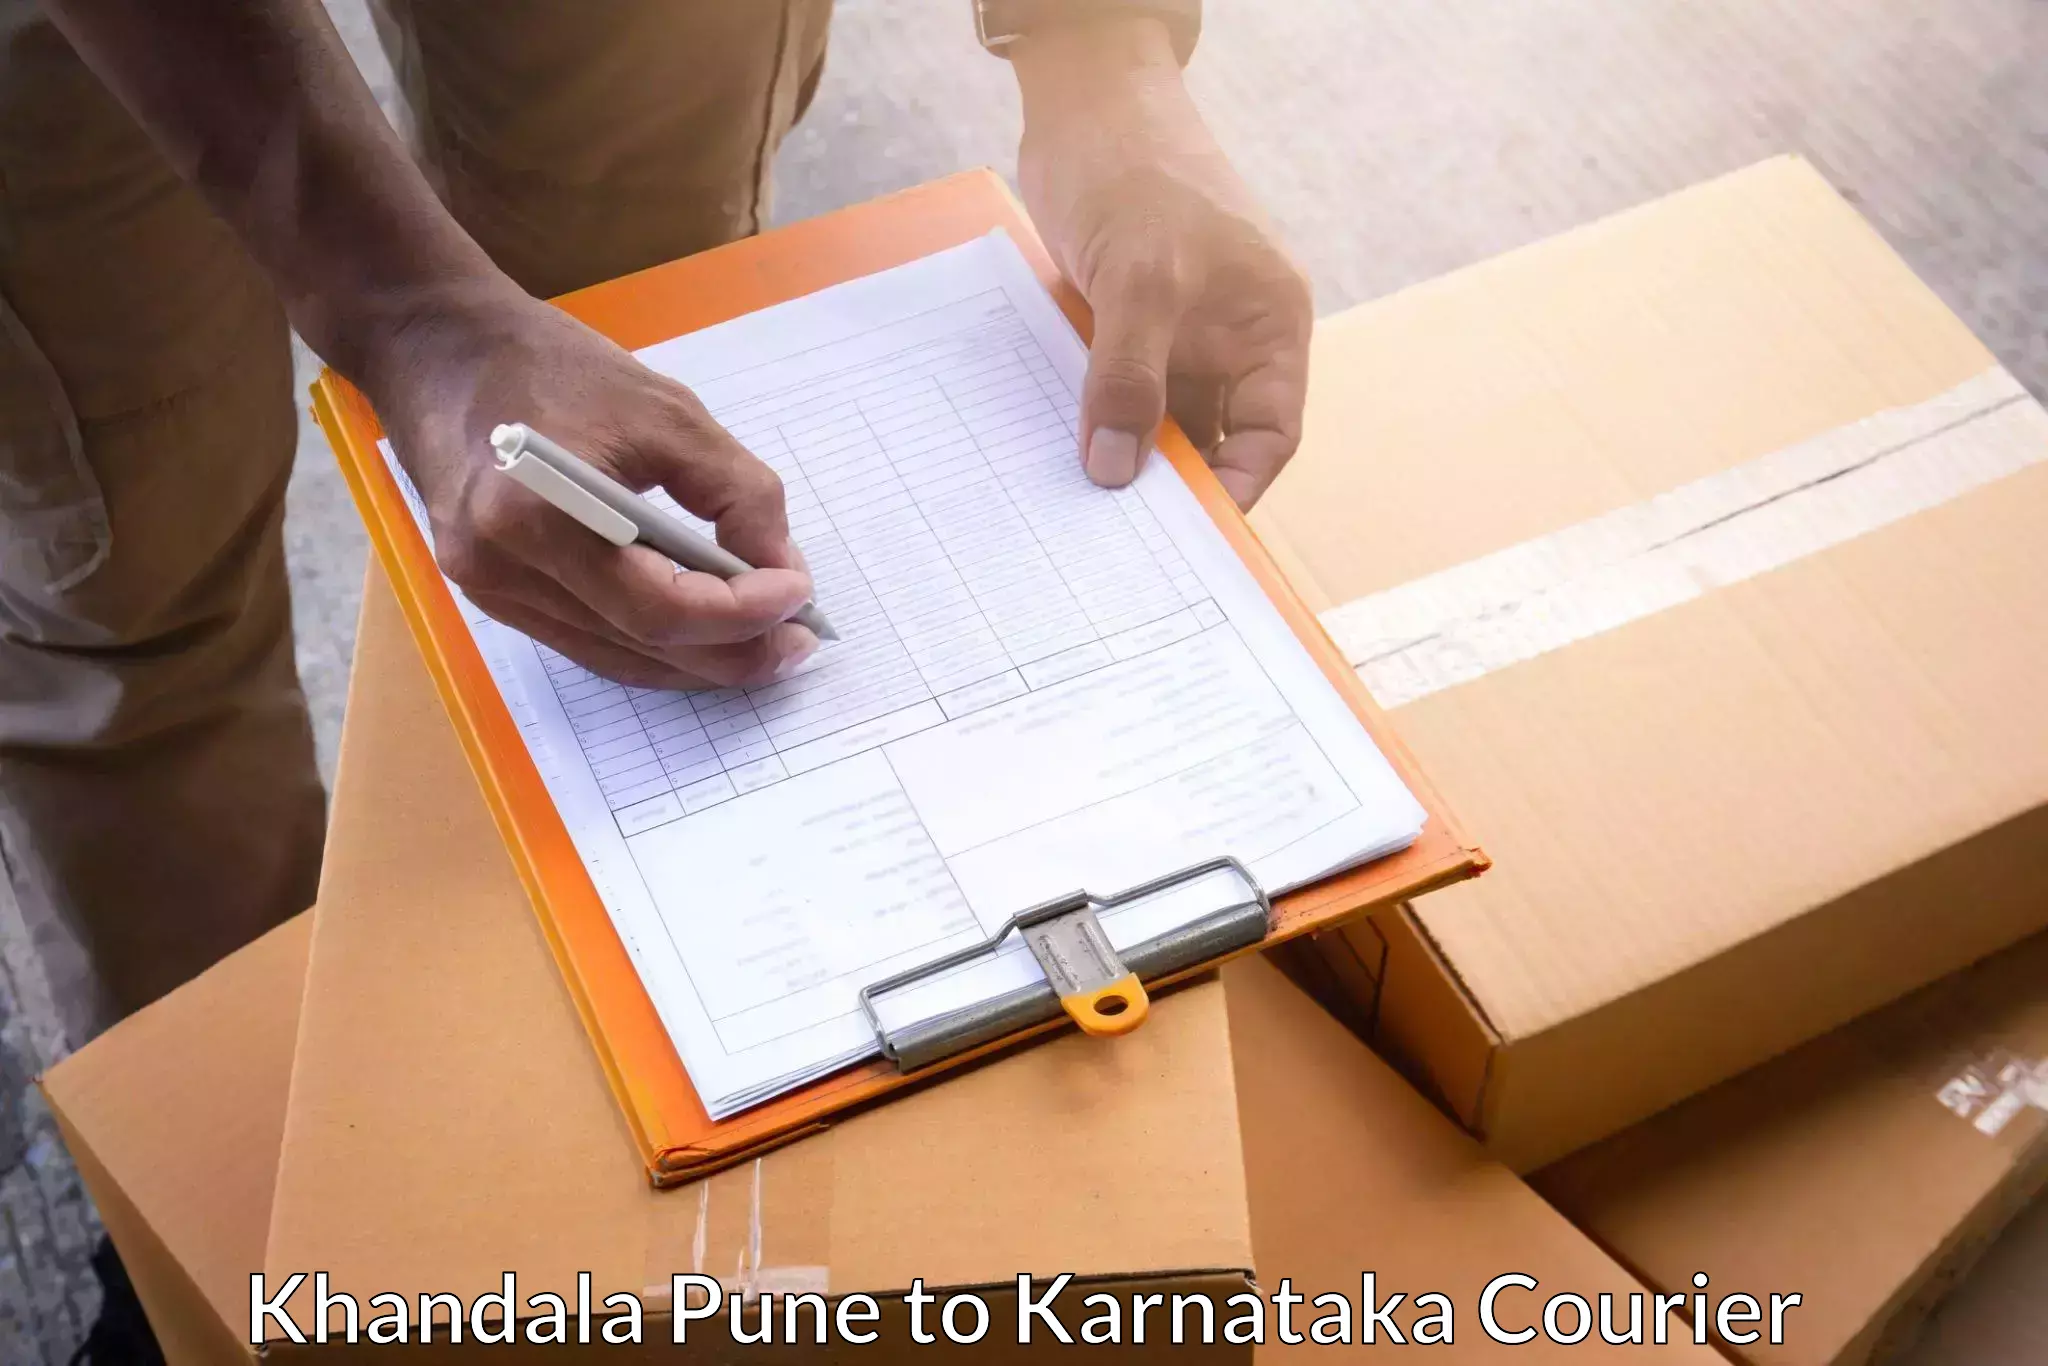 Urban courier service Khandala Pune to Udupi